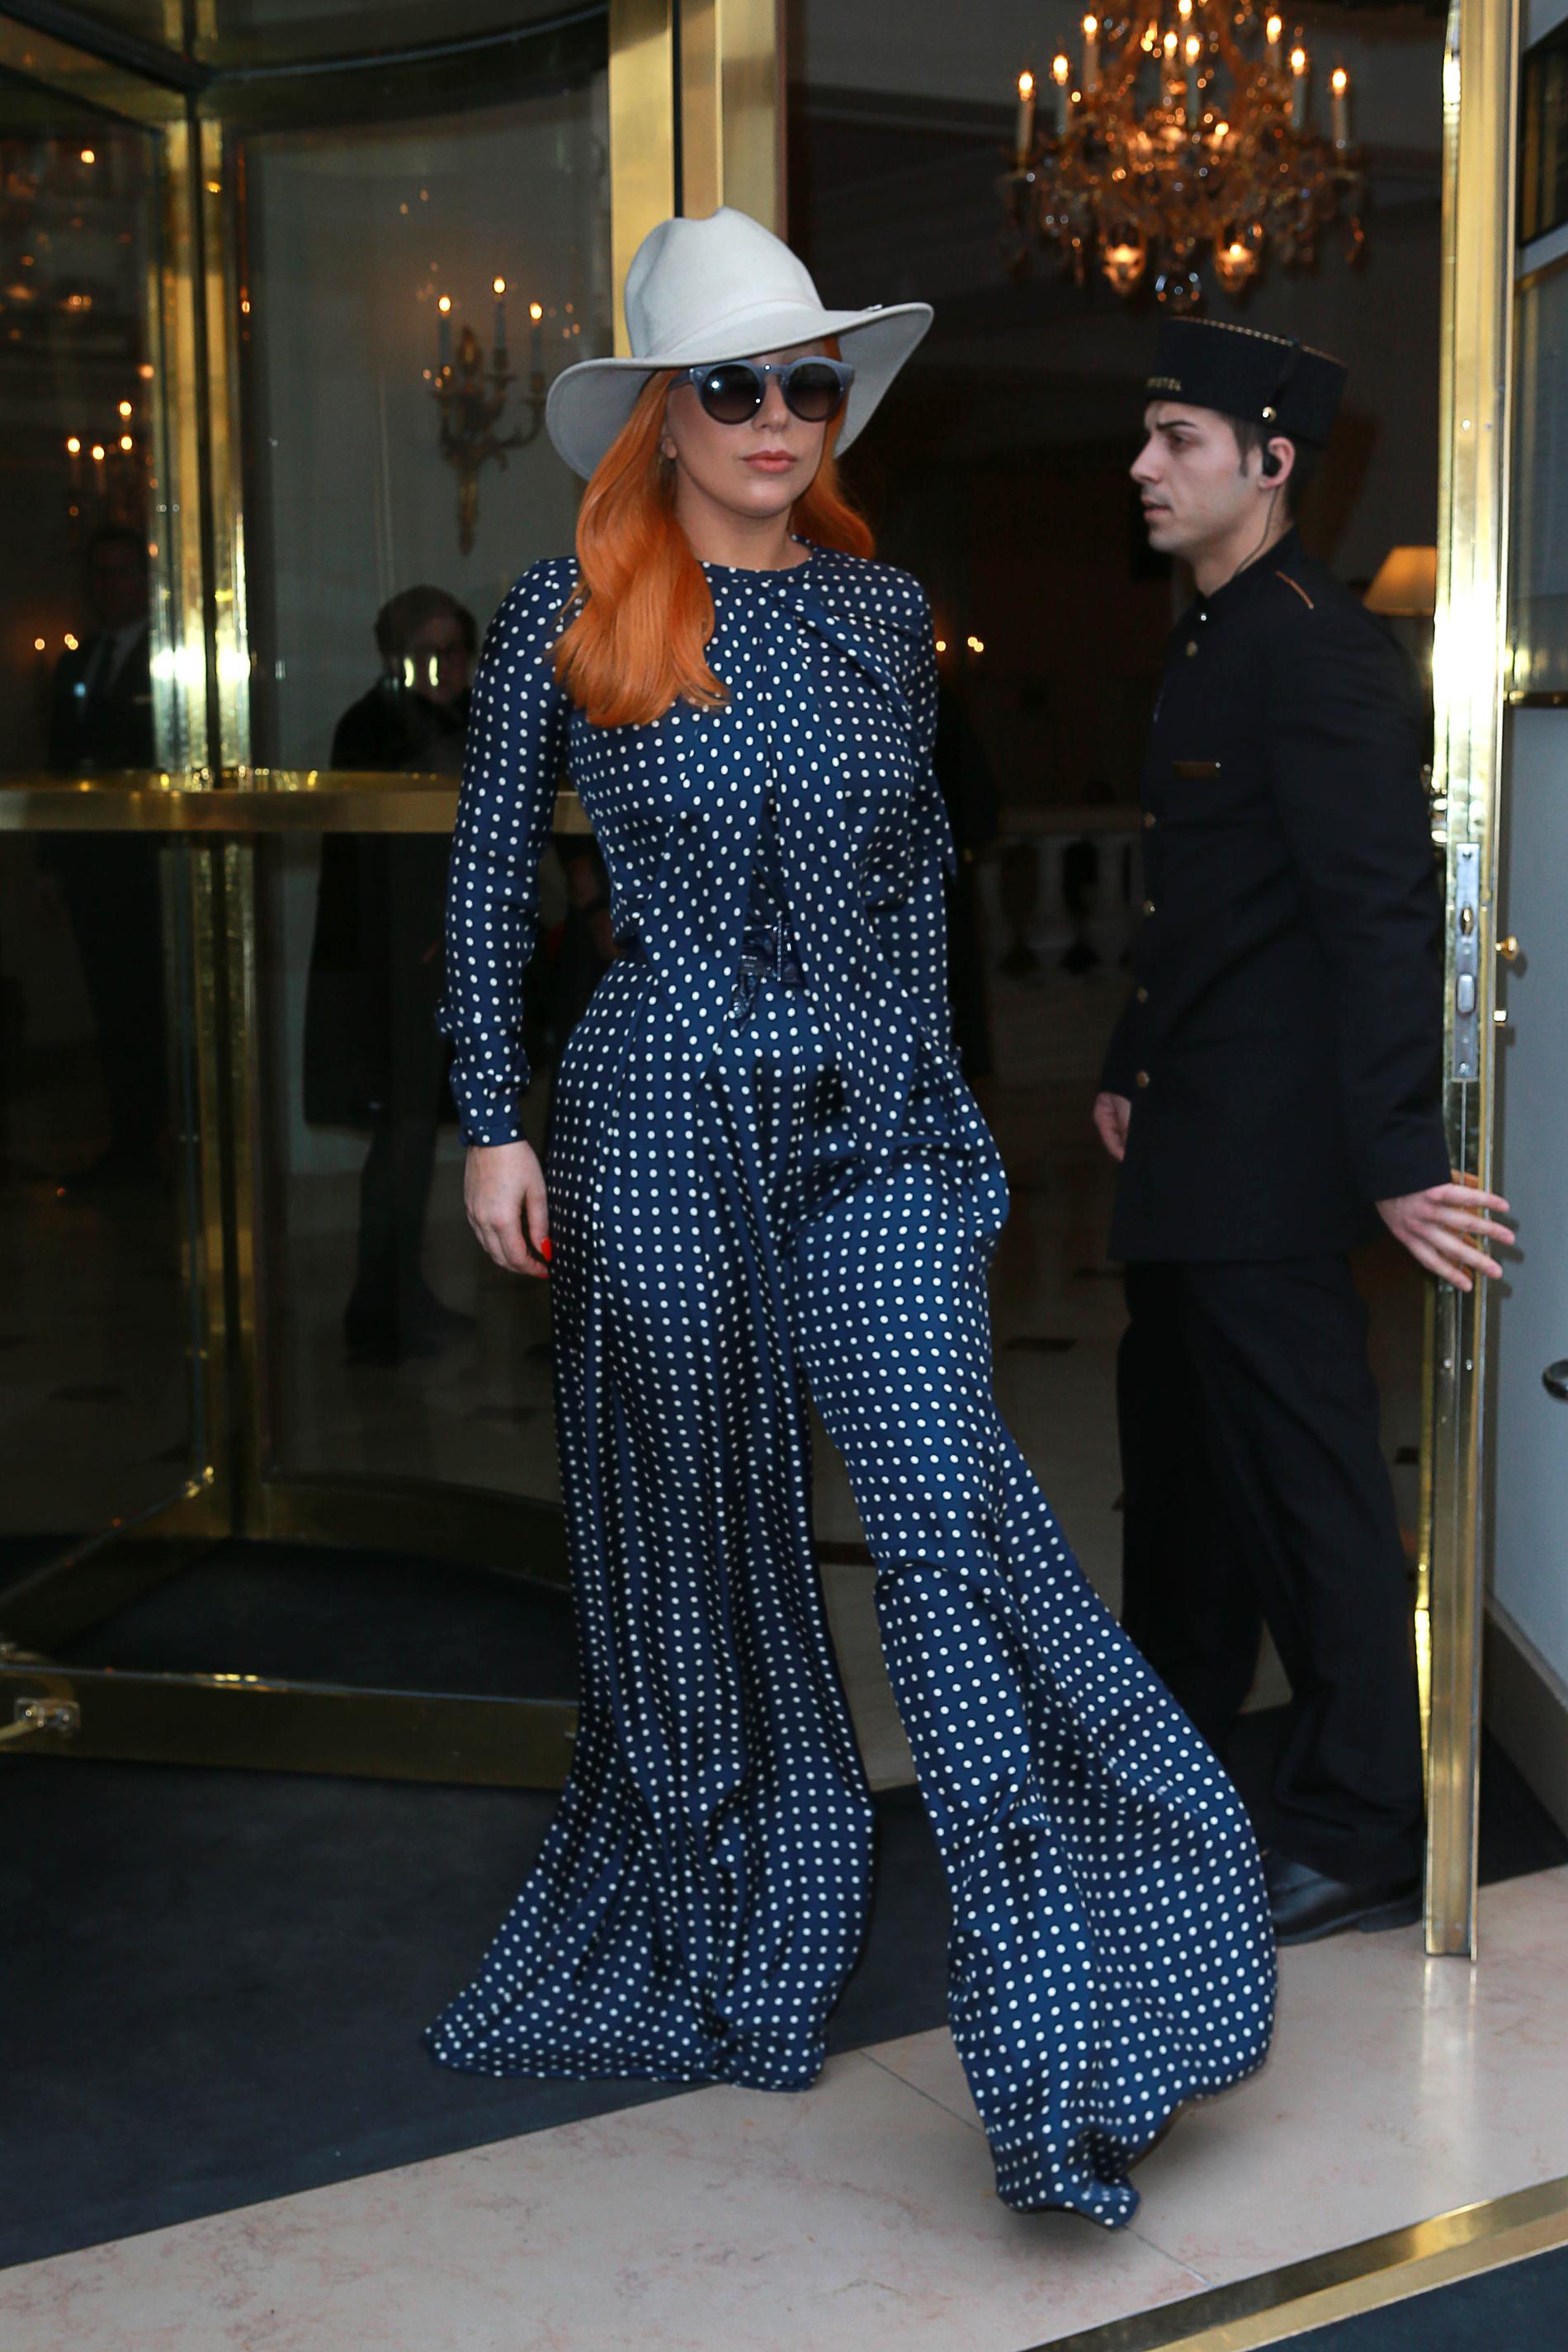 Lady Gaga Det är inte bara Kim Kardashian som gjort en rejäl hårförvandling. Även Gaga har lagt håret i handfatet för en ny färg. Vi älskar både färgen och den fantastiska jumpsuiten hon matchade det orangea med!